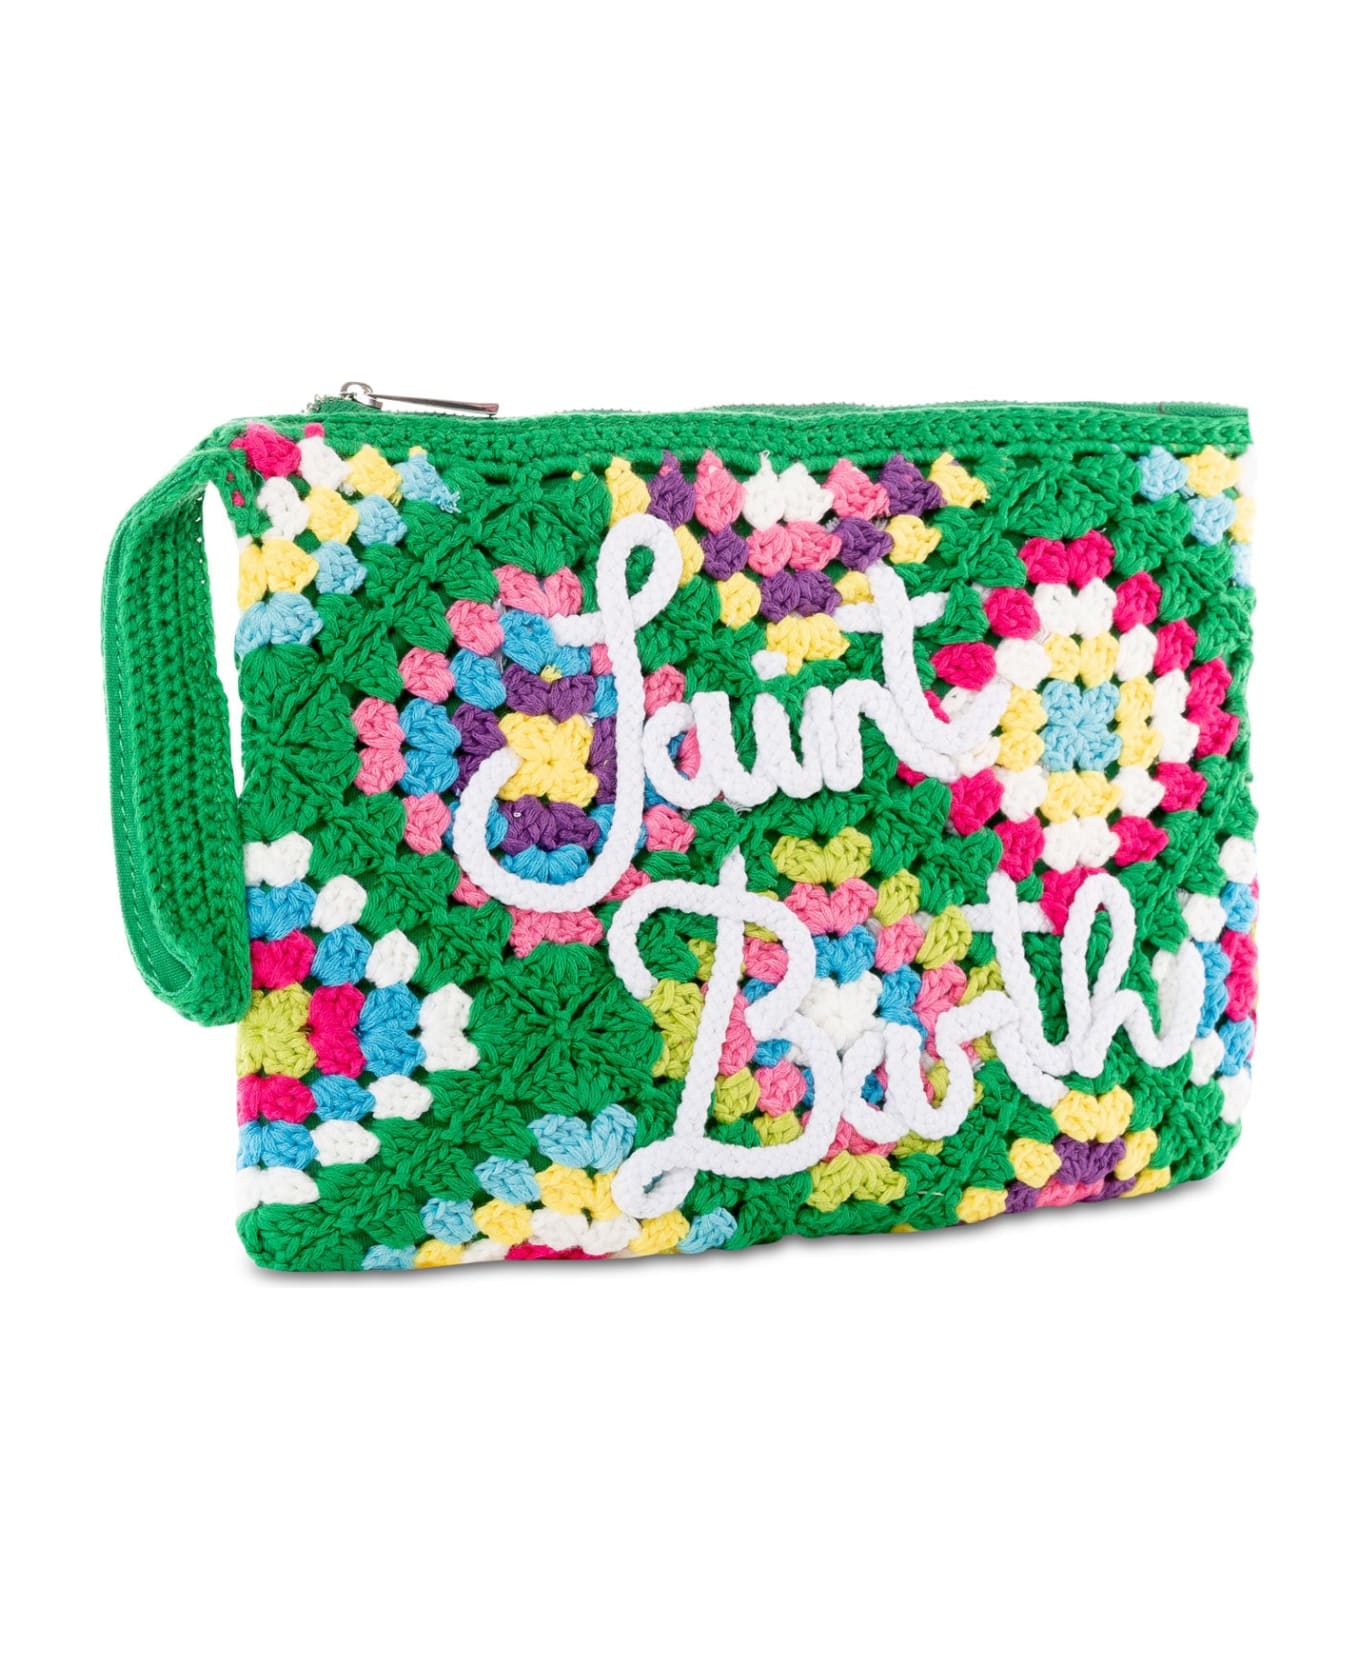 MC2 Saint Barth Parisienne Green Crochet Pouch Bag With Saint Barth - GREEN